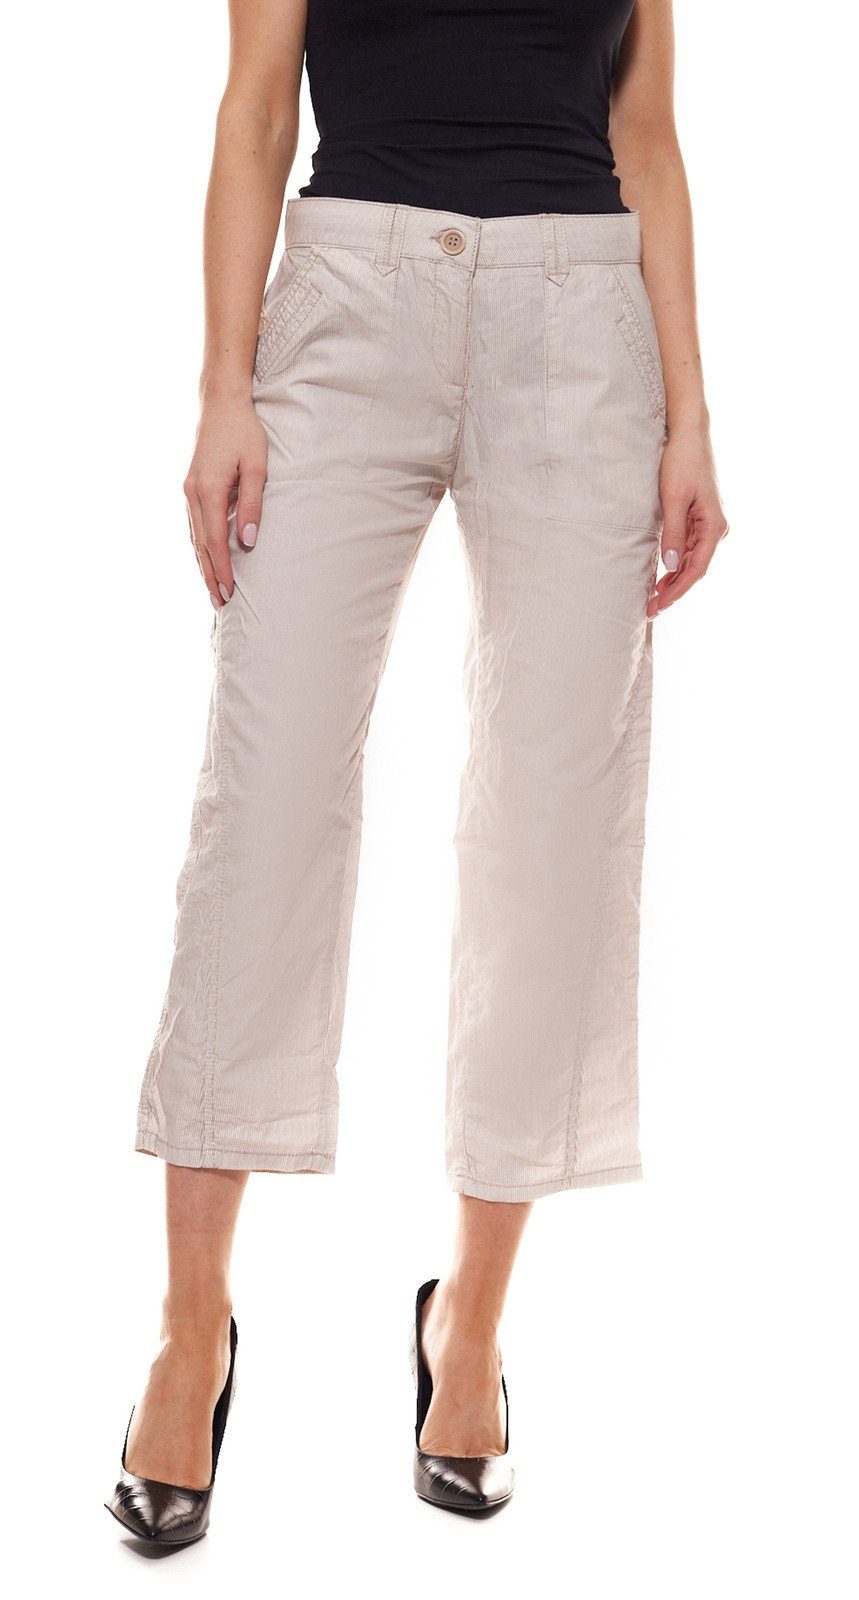 OPUS Stoffhose »OPUS 7/8-Hose geschmackvolle Damen Stoff-Hose mit  Streifenmuster Sommer-Hose Beige« online kaufen | OTTO